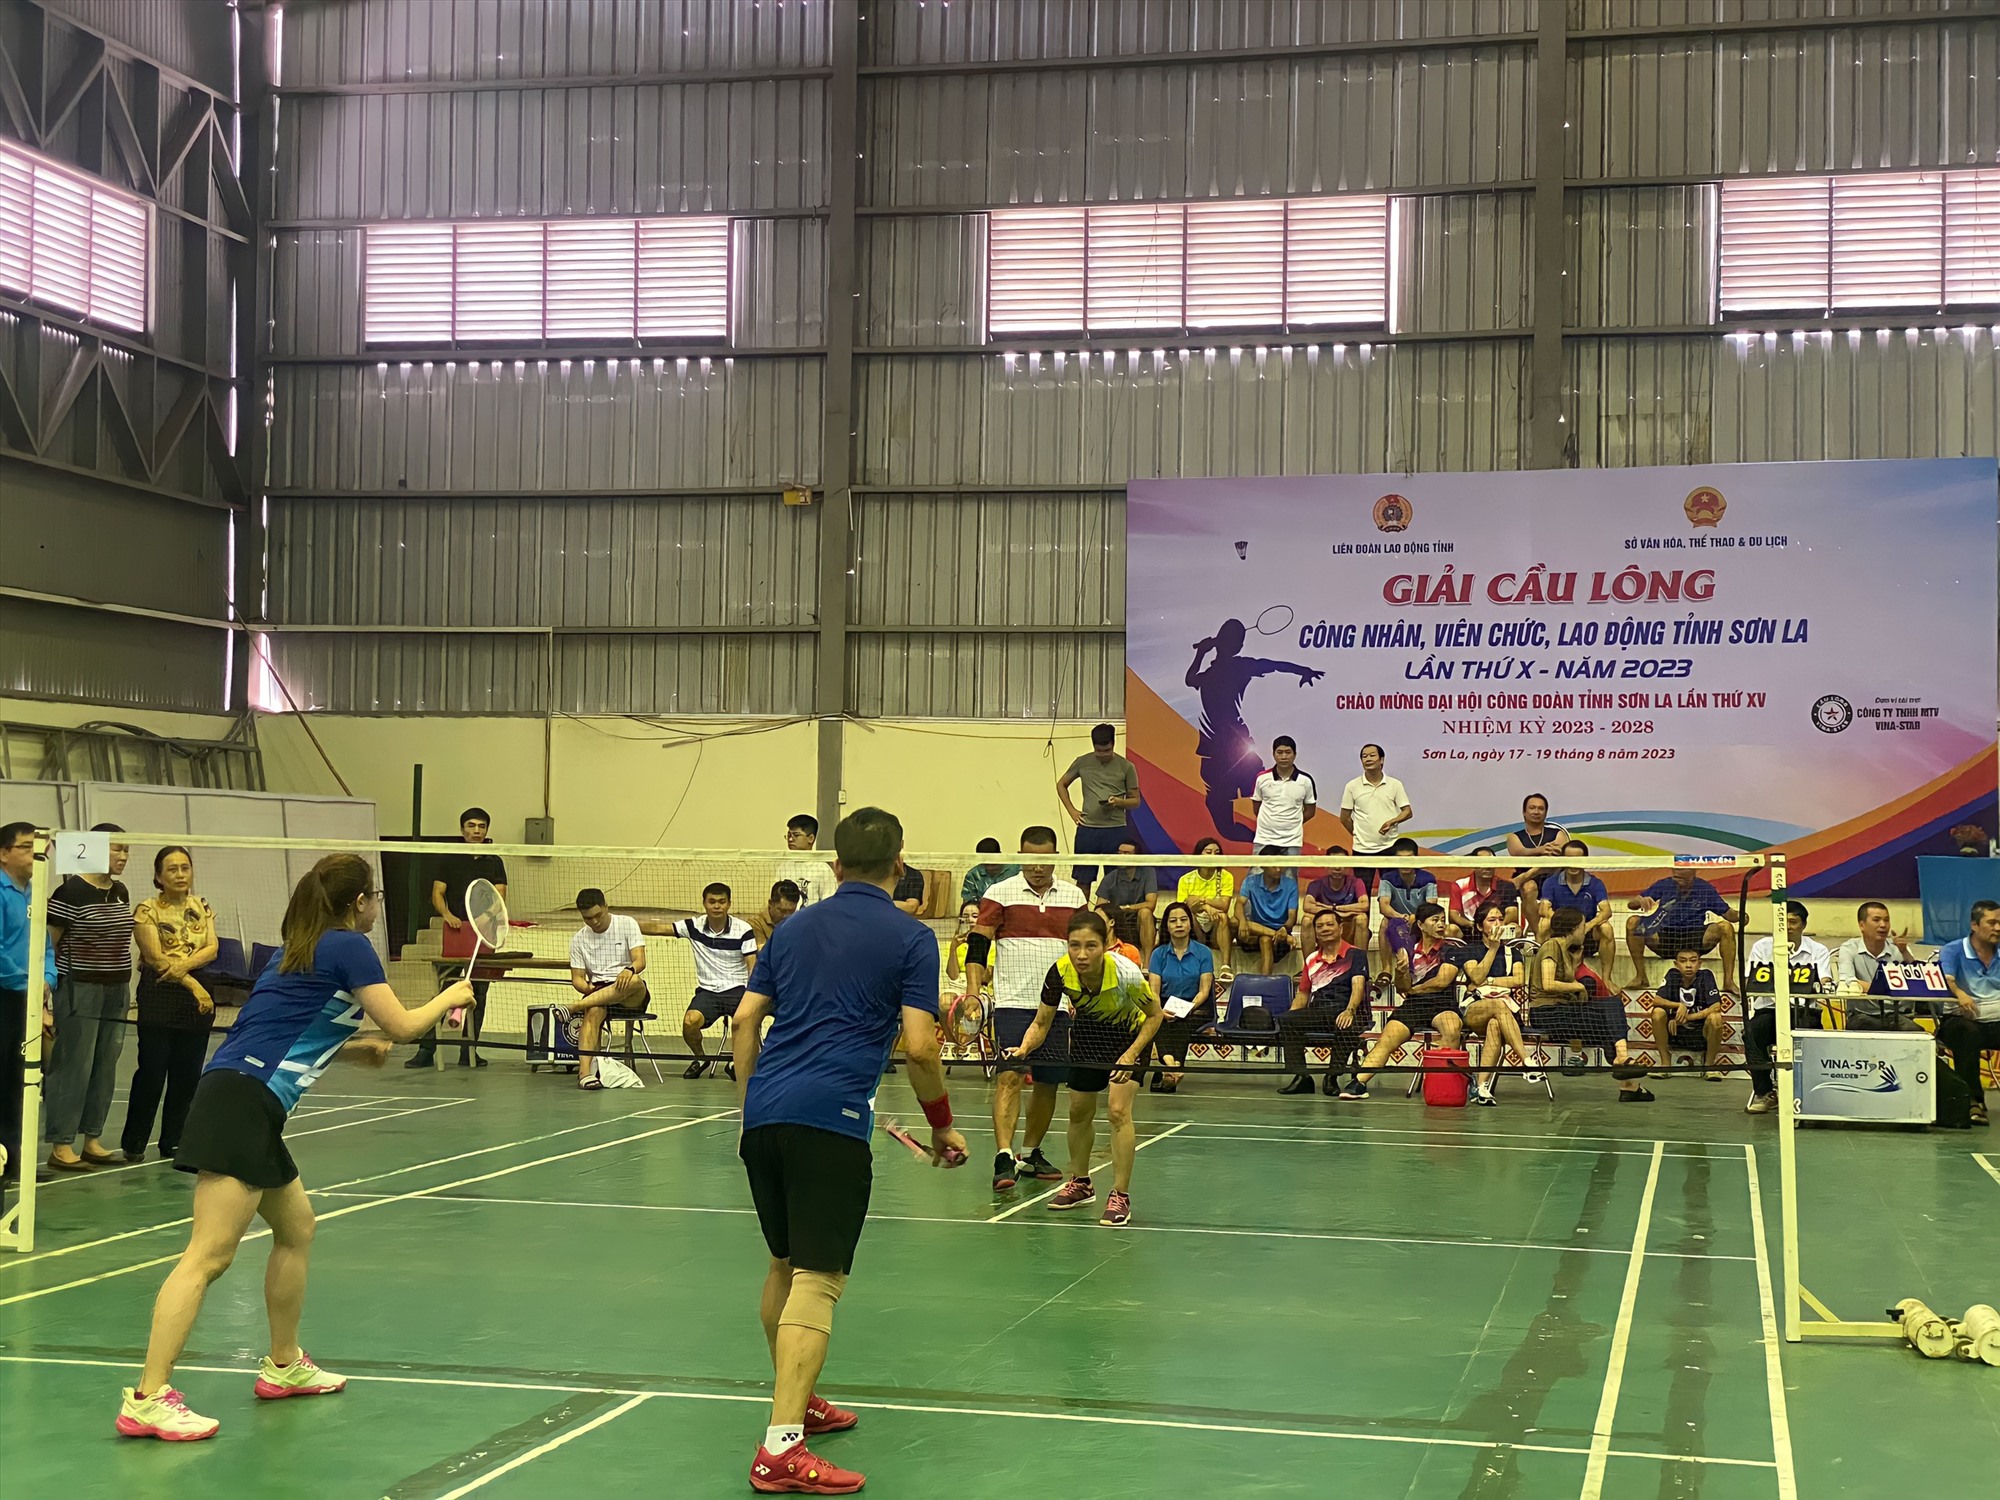 Giải đấu cầu lông được diễn ra trong 3 ngày với đầy kịch tính đến từ các đội thuộc đơn vị CĐ ngành và huyện, thành phố.